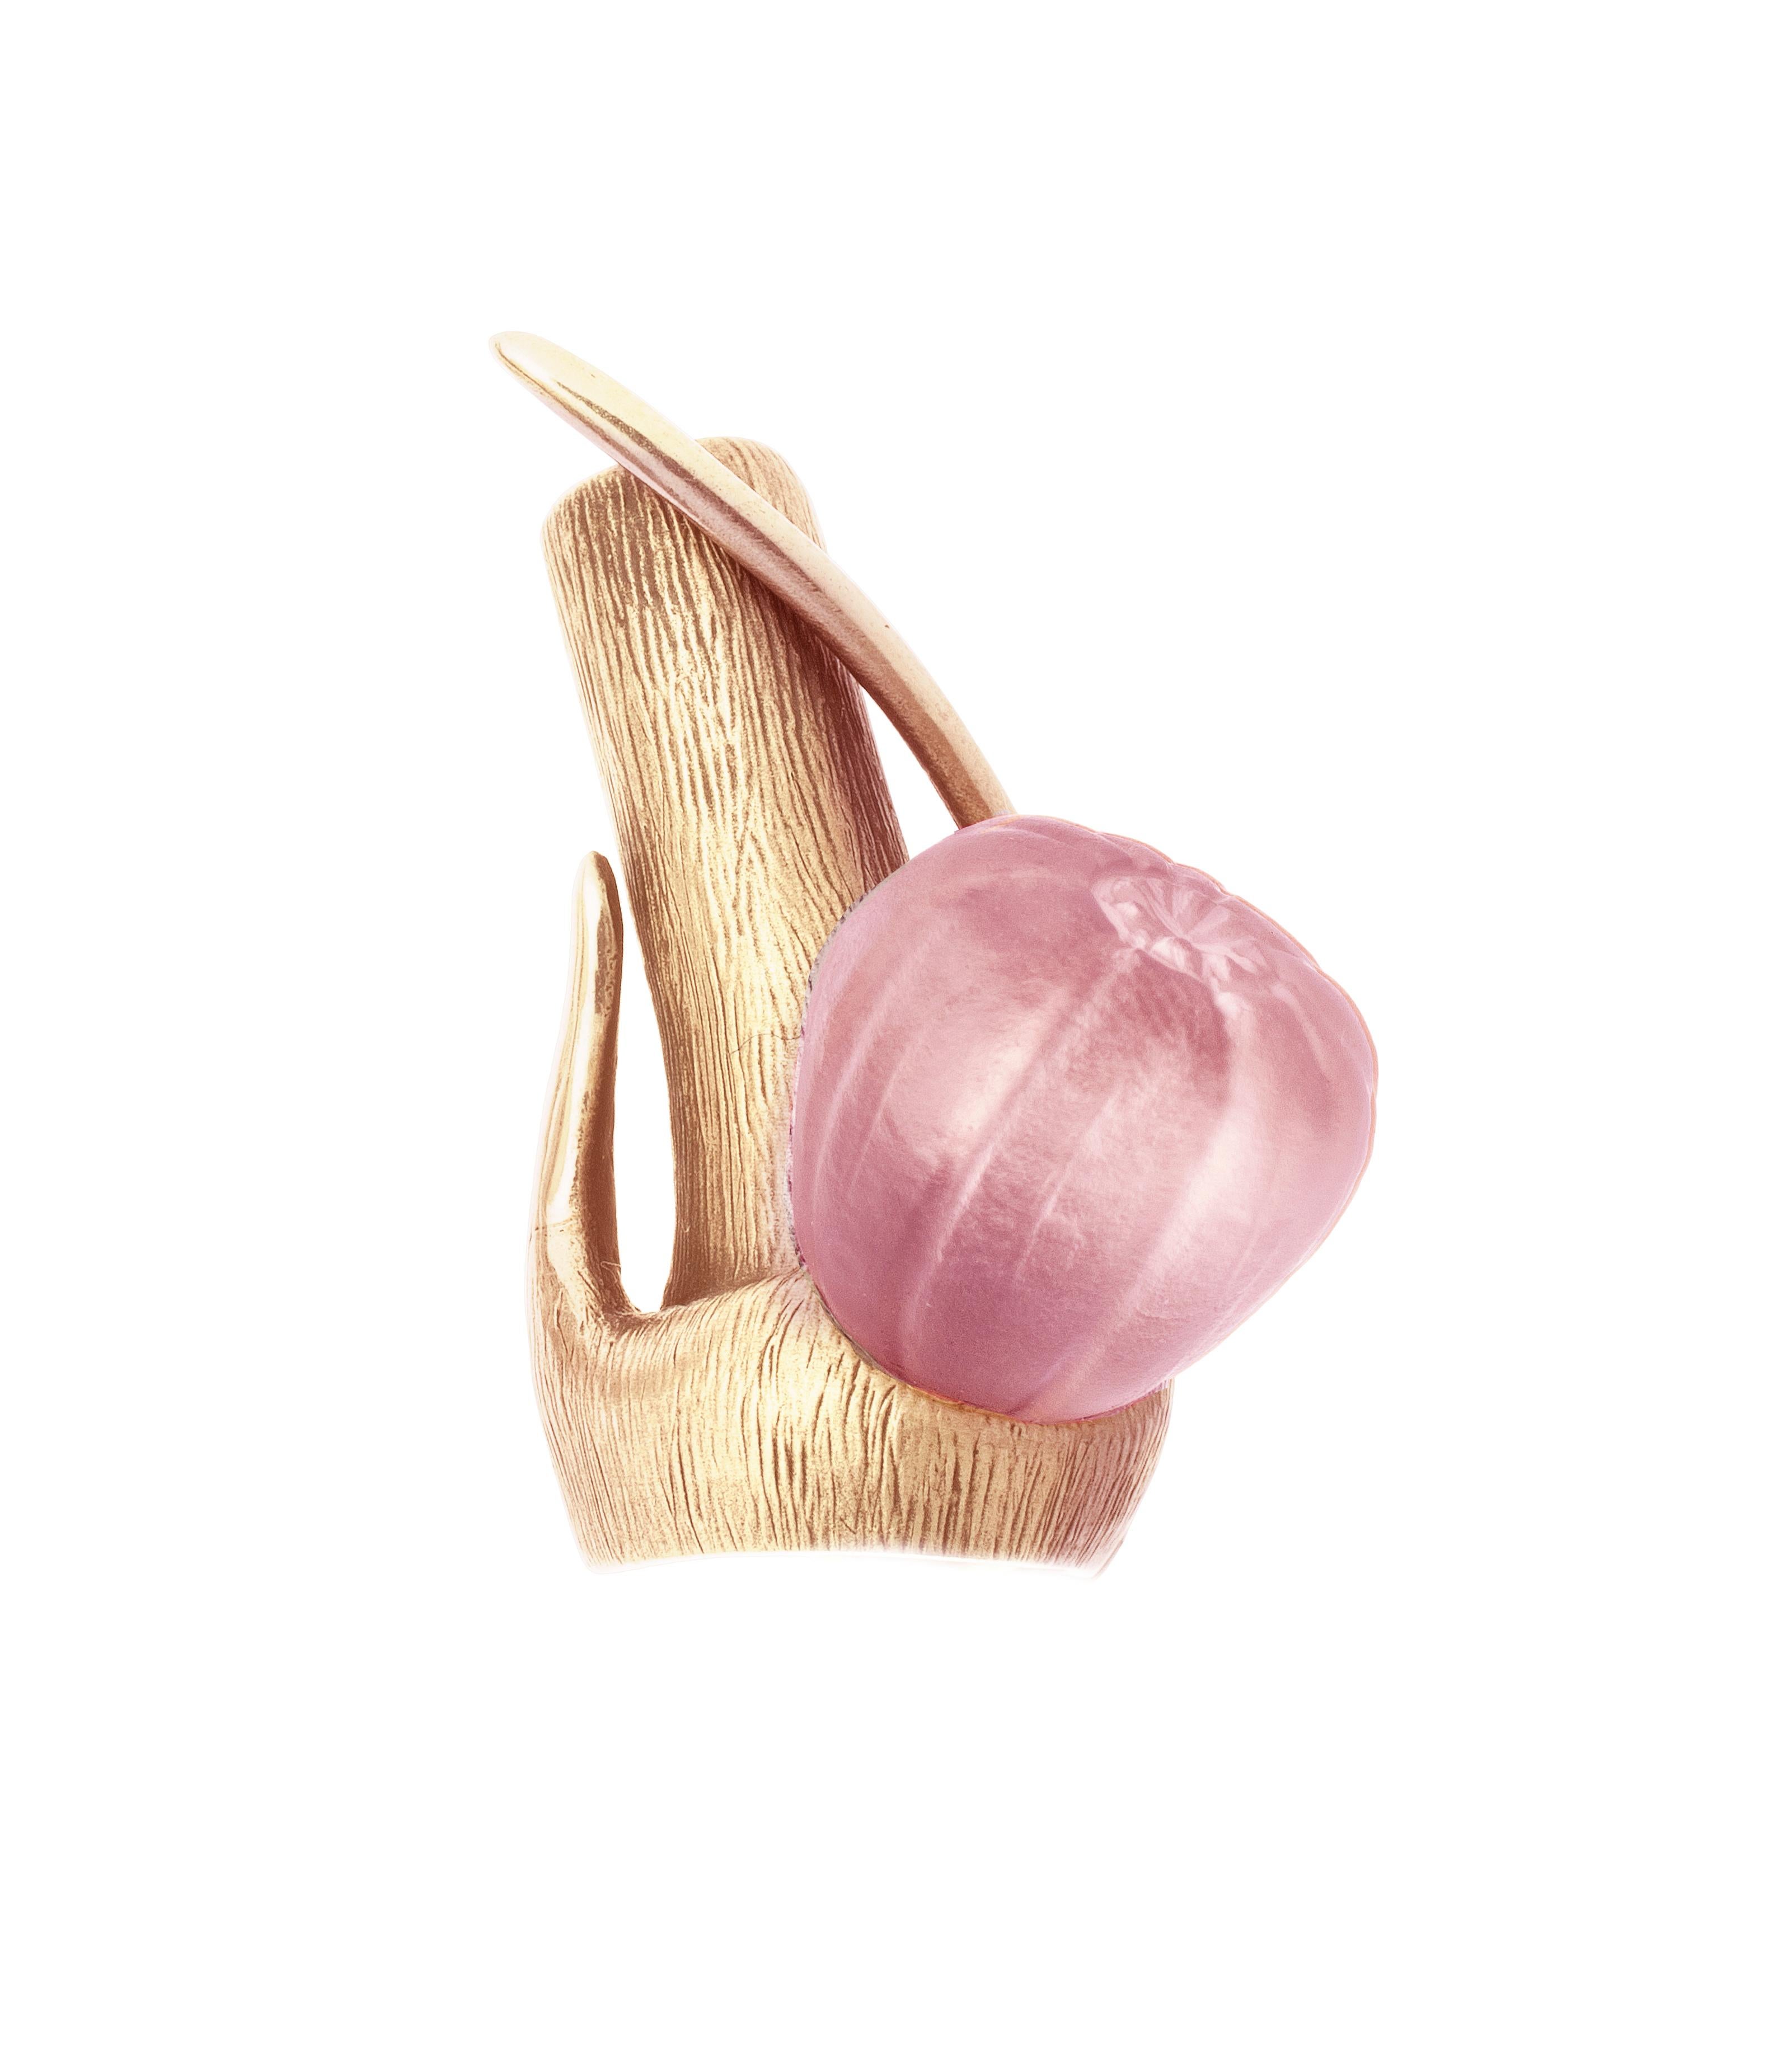 Ce collier pendentif Fig contemporain est en or rose 14 carats et présente un magnifique onyx rose. La collection a fait l'objet de critiques éditoriales de la part de Vogue UA et Harper's Bazaar UA.

Le fruit de la figue est une sculpture